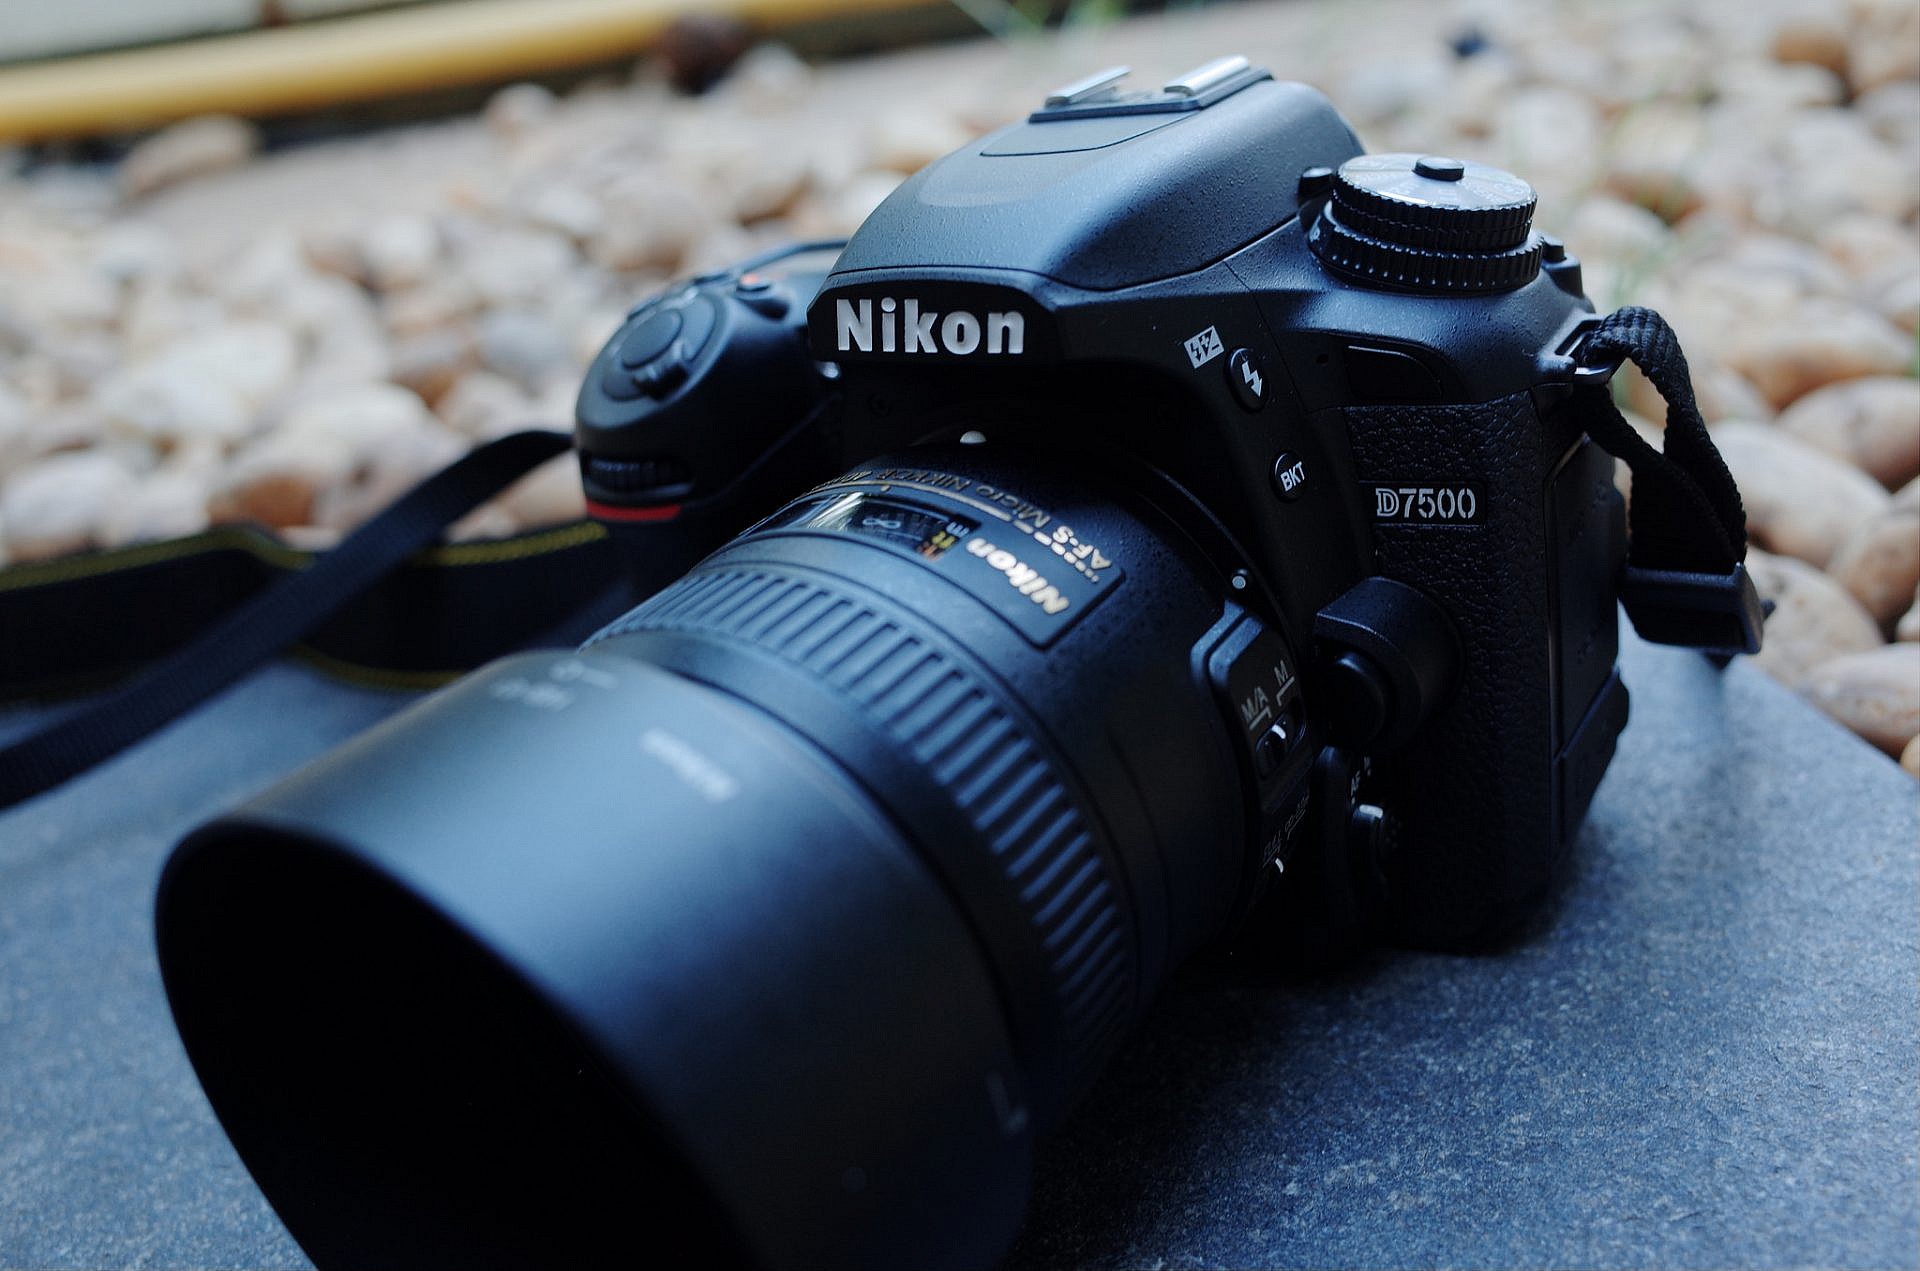 รีวิว Nikon D7500 กล้อง DSLR รุ่นกลางที่ถอดวิญญาณรุ่นพี่มาใส่